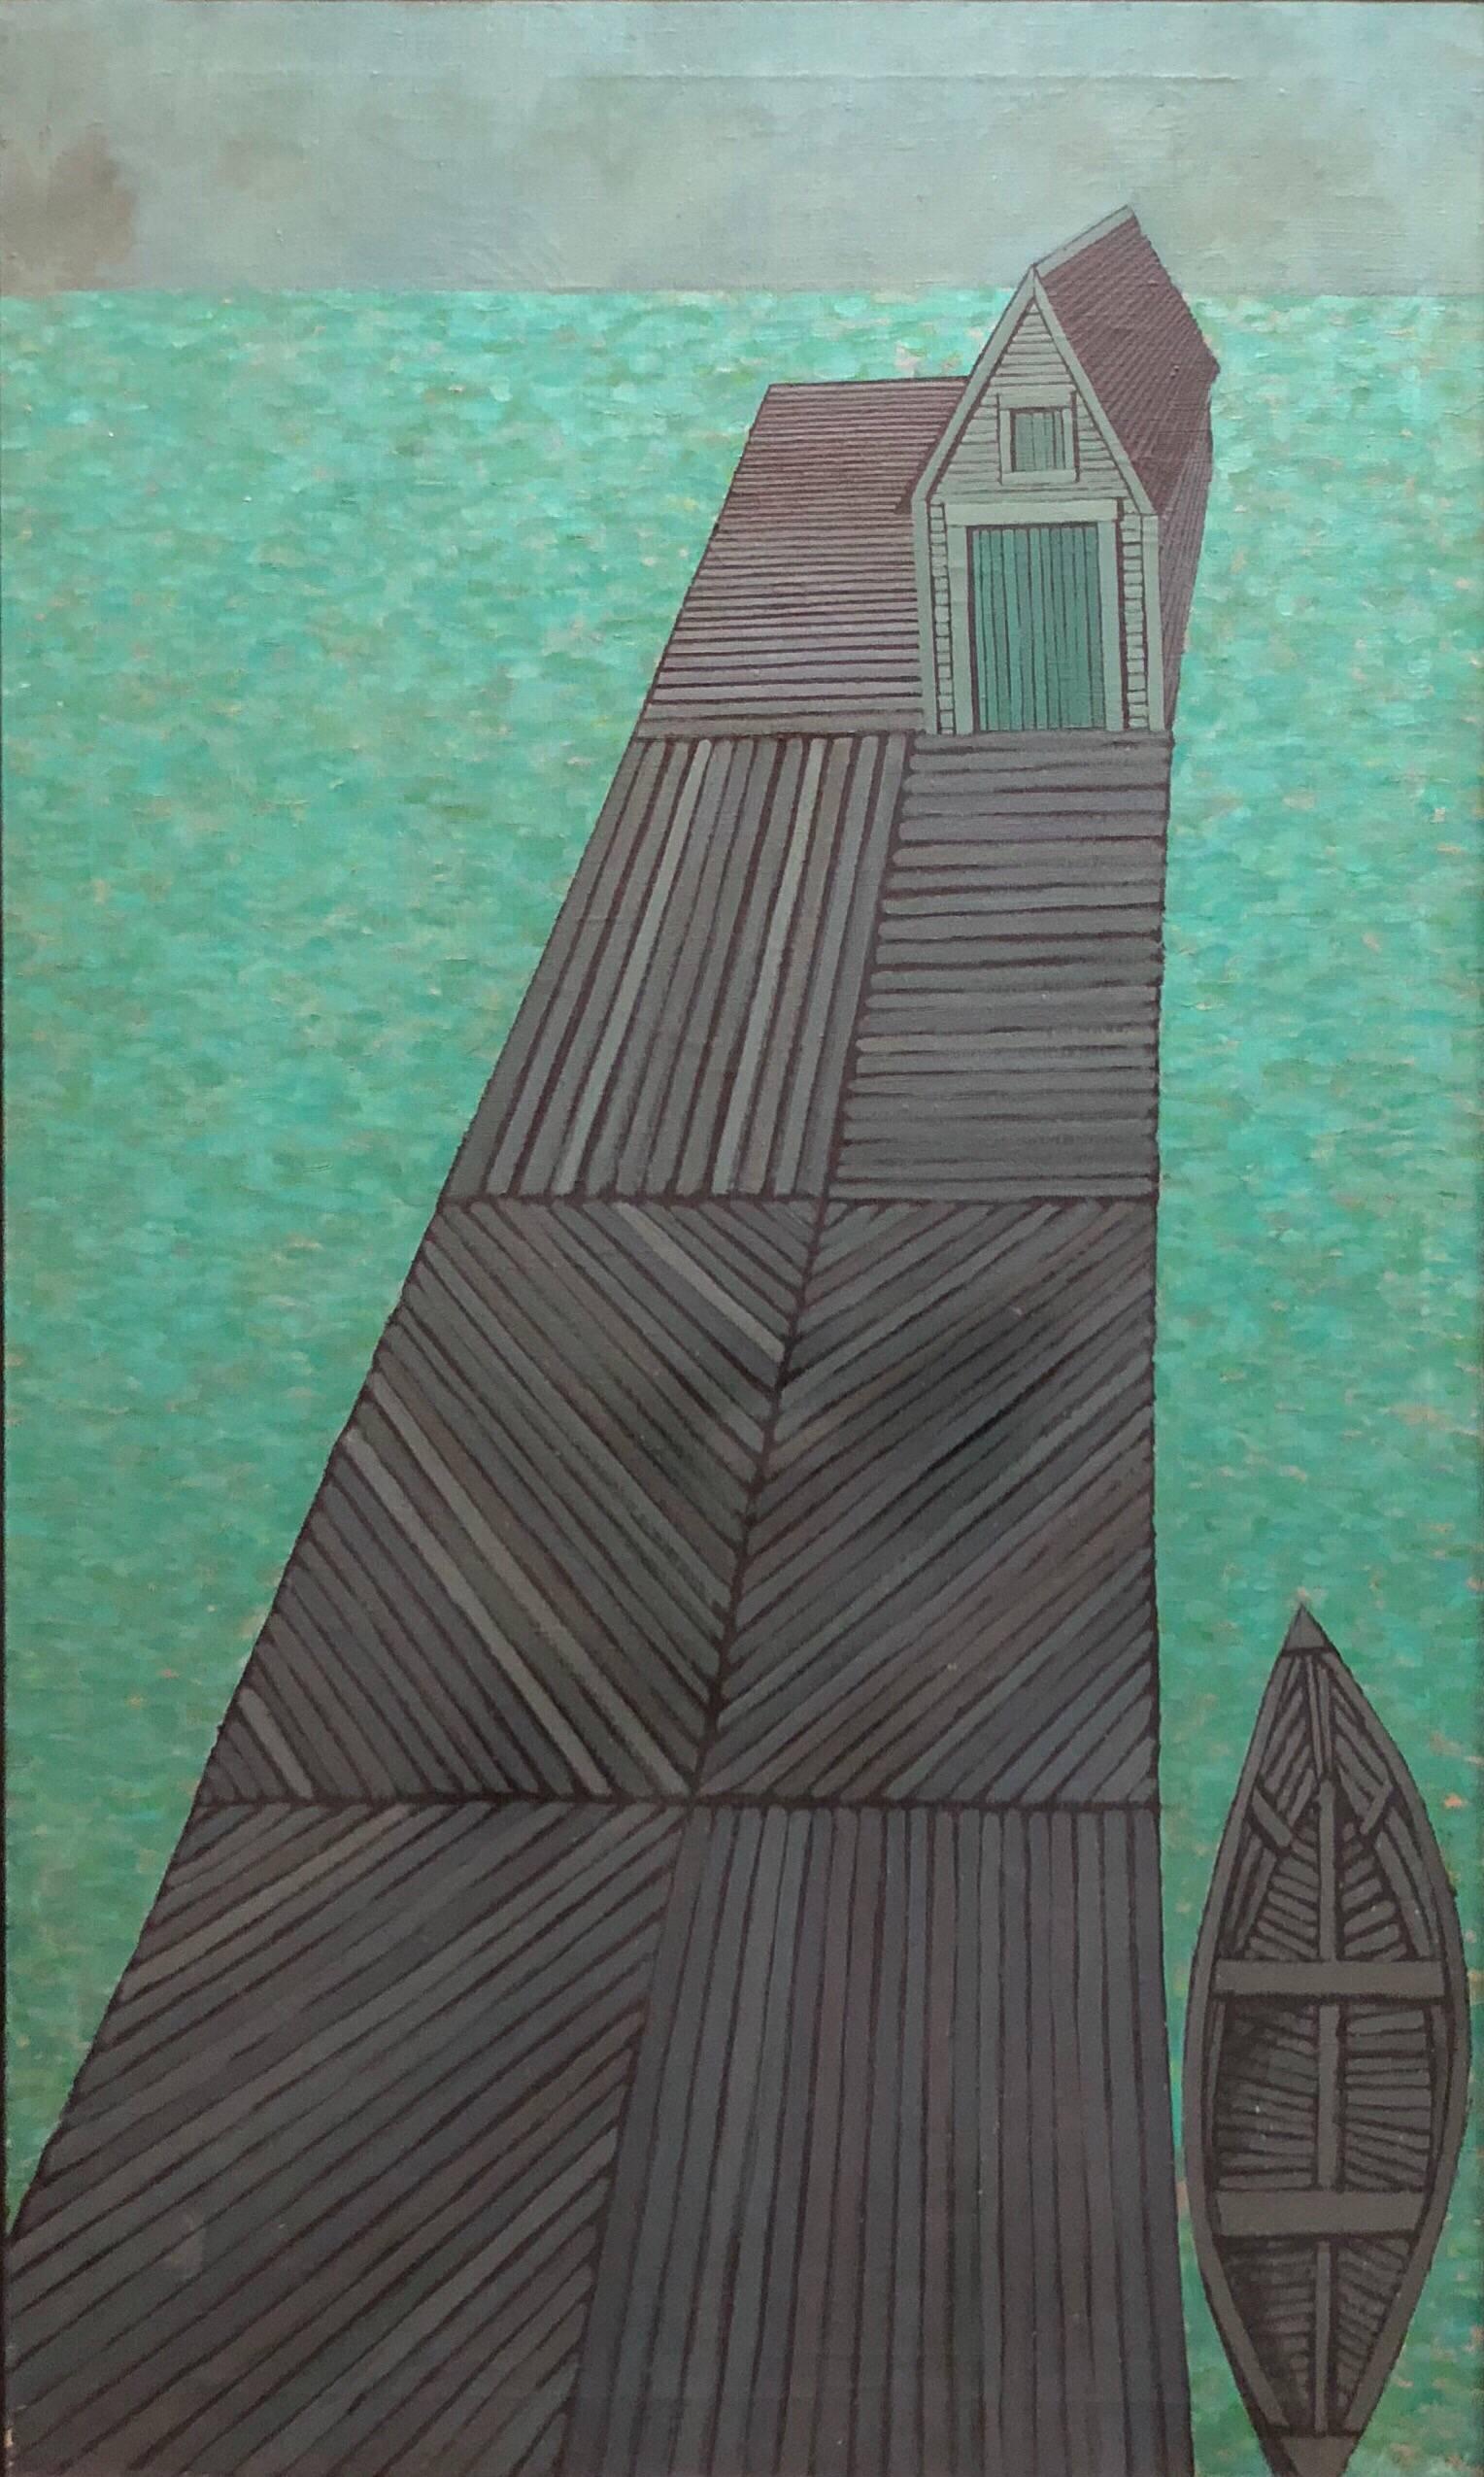 Auf diesem Gemälde von Judith Shahn stellt die Künstlerin ein Boot und einen Steg in einer Reihe von Linien dar. Der Künstler wählt einen naiven Ansatz für die Darstellung des Themas, indem er die Elemente in der Komposition auf ihre grundlegenden